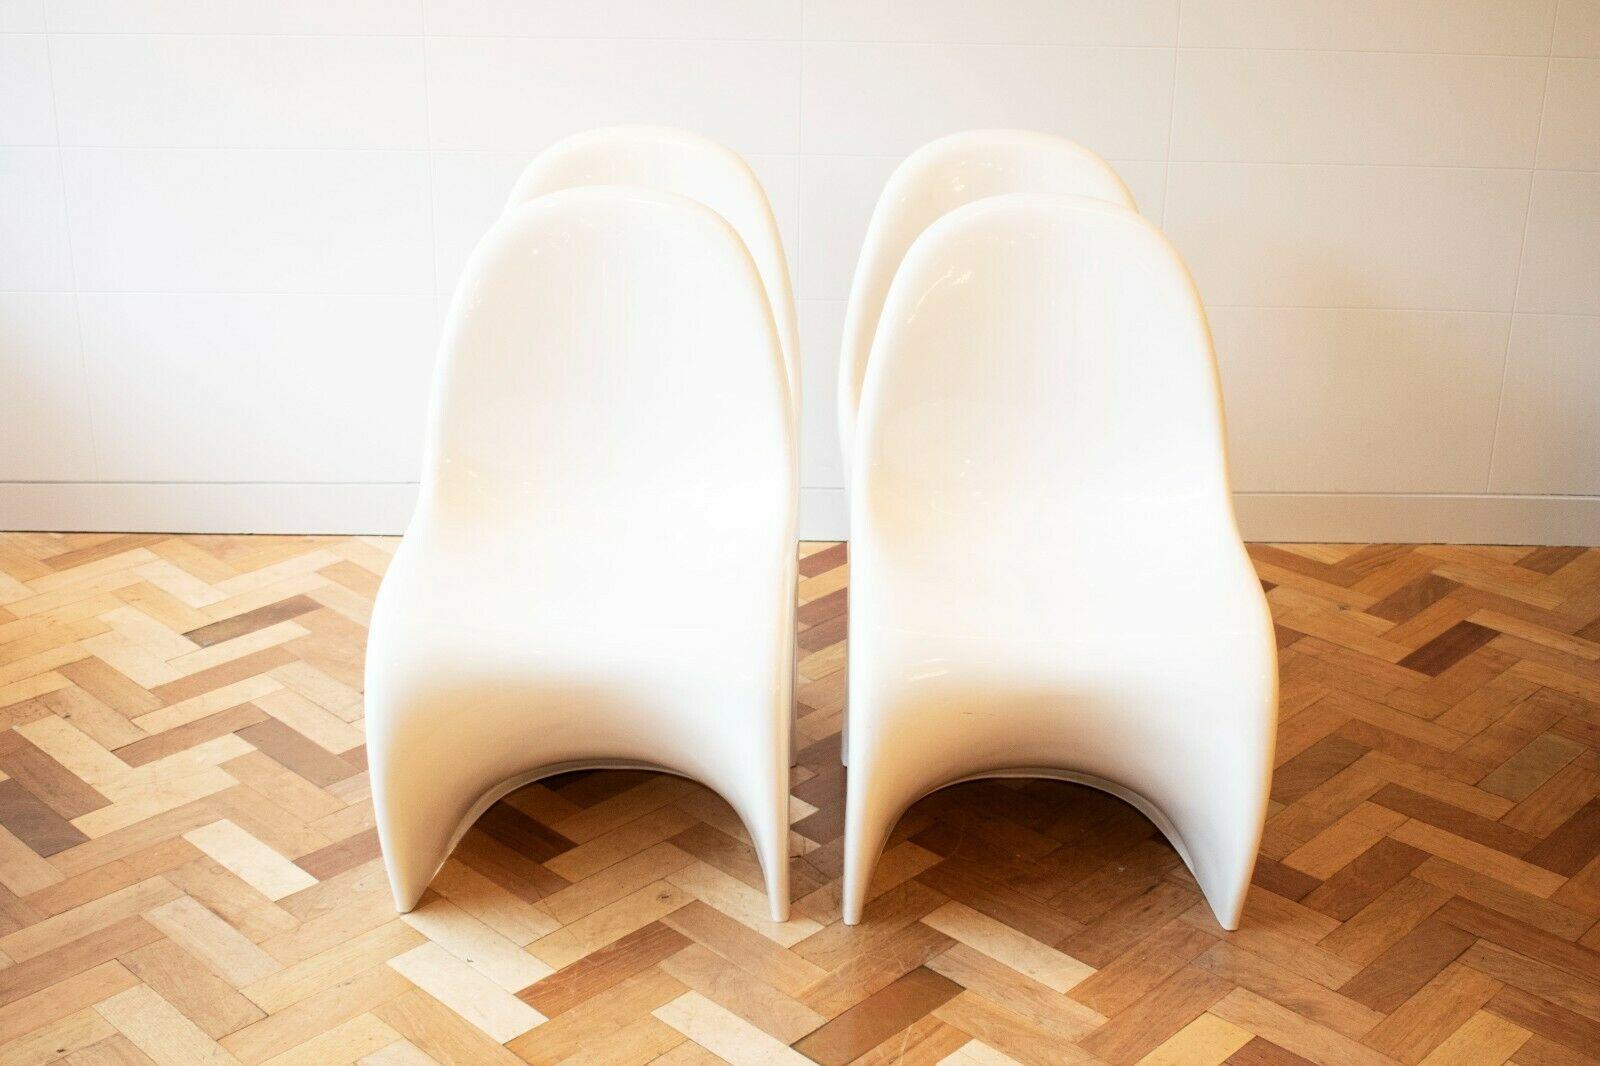 Beistell-/Esszimmerstühle von Verner Panton für Herman Miller, Modernismus, 1970er Jahre (Moderne der Mitte des Jahrhunderts)